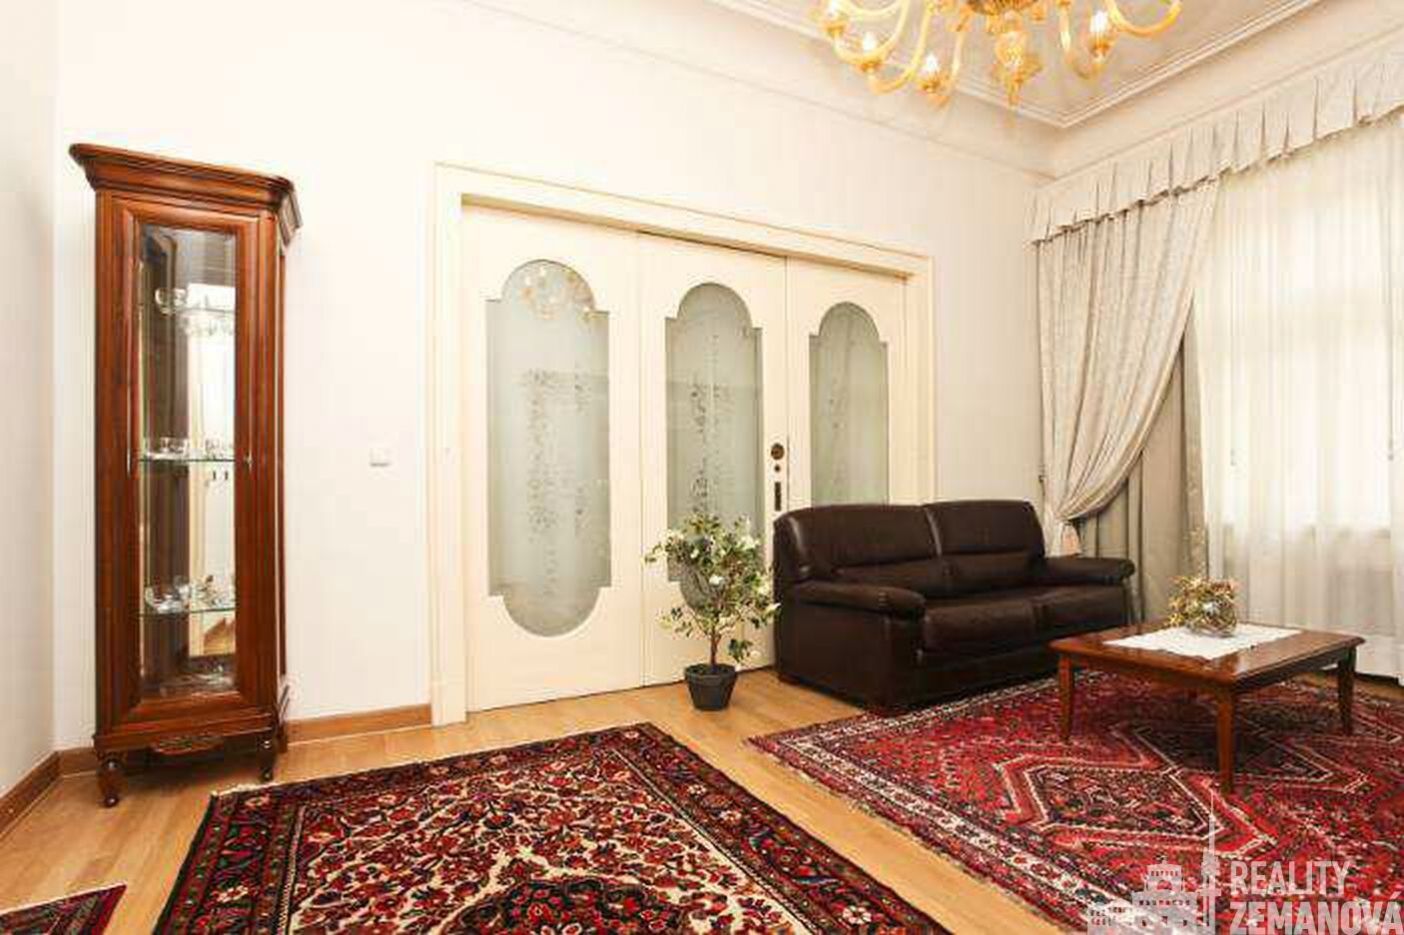 Mimořádný byt 123 m2, 4+kk, luxusně zařízený, 4. NP/3.patro s výtahem, Praha 1, obrázek č. 1